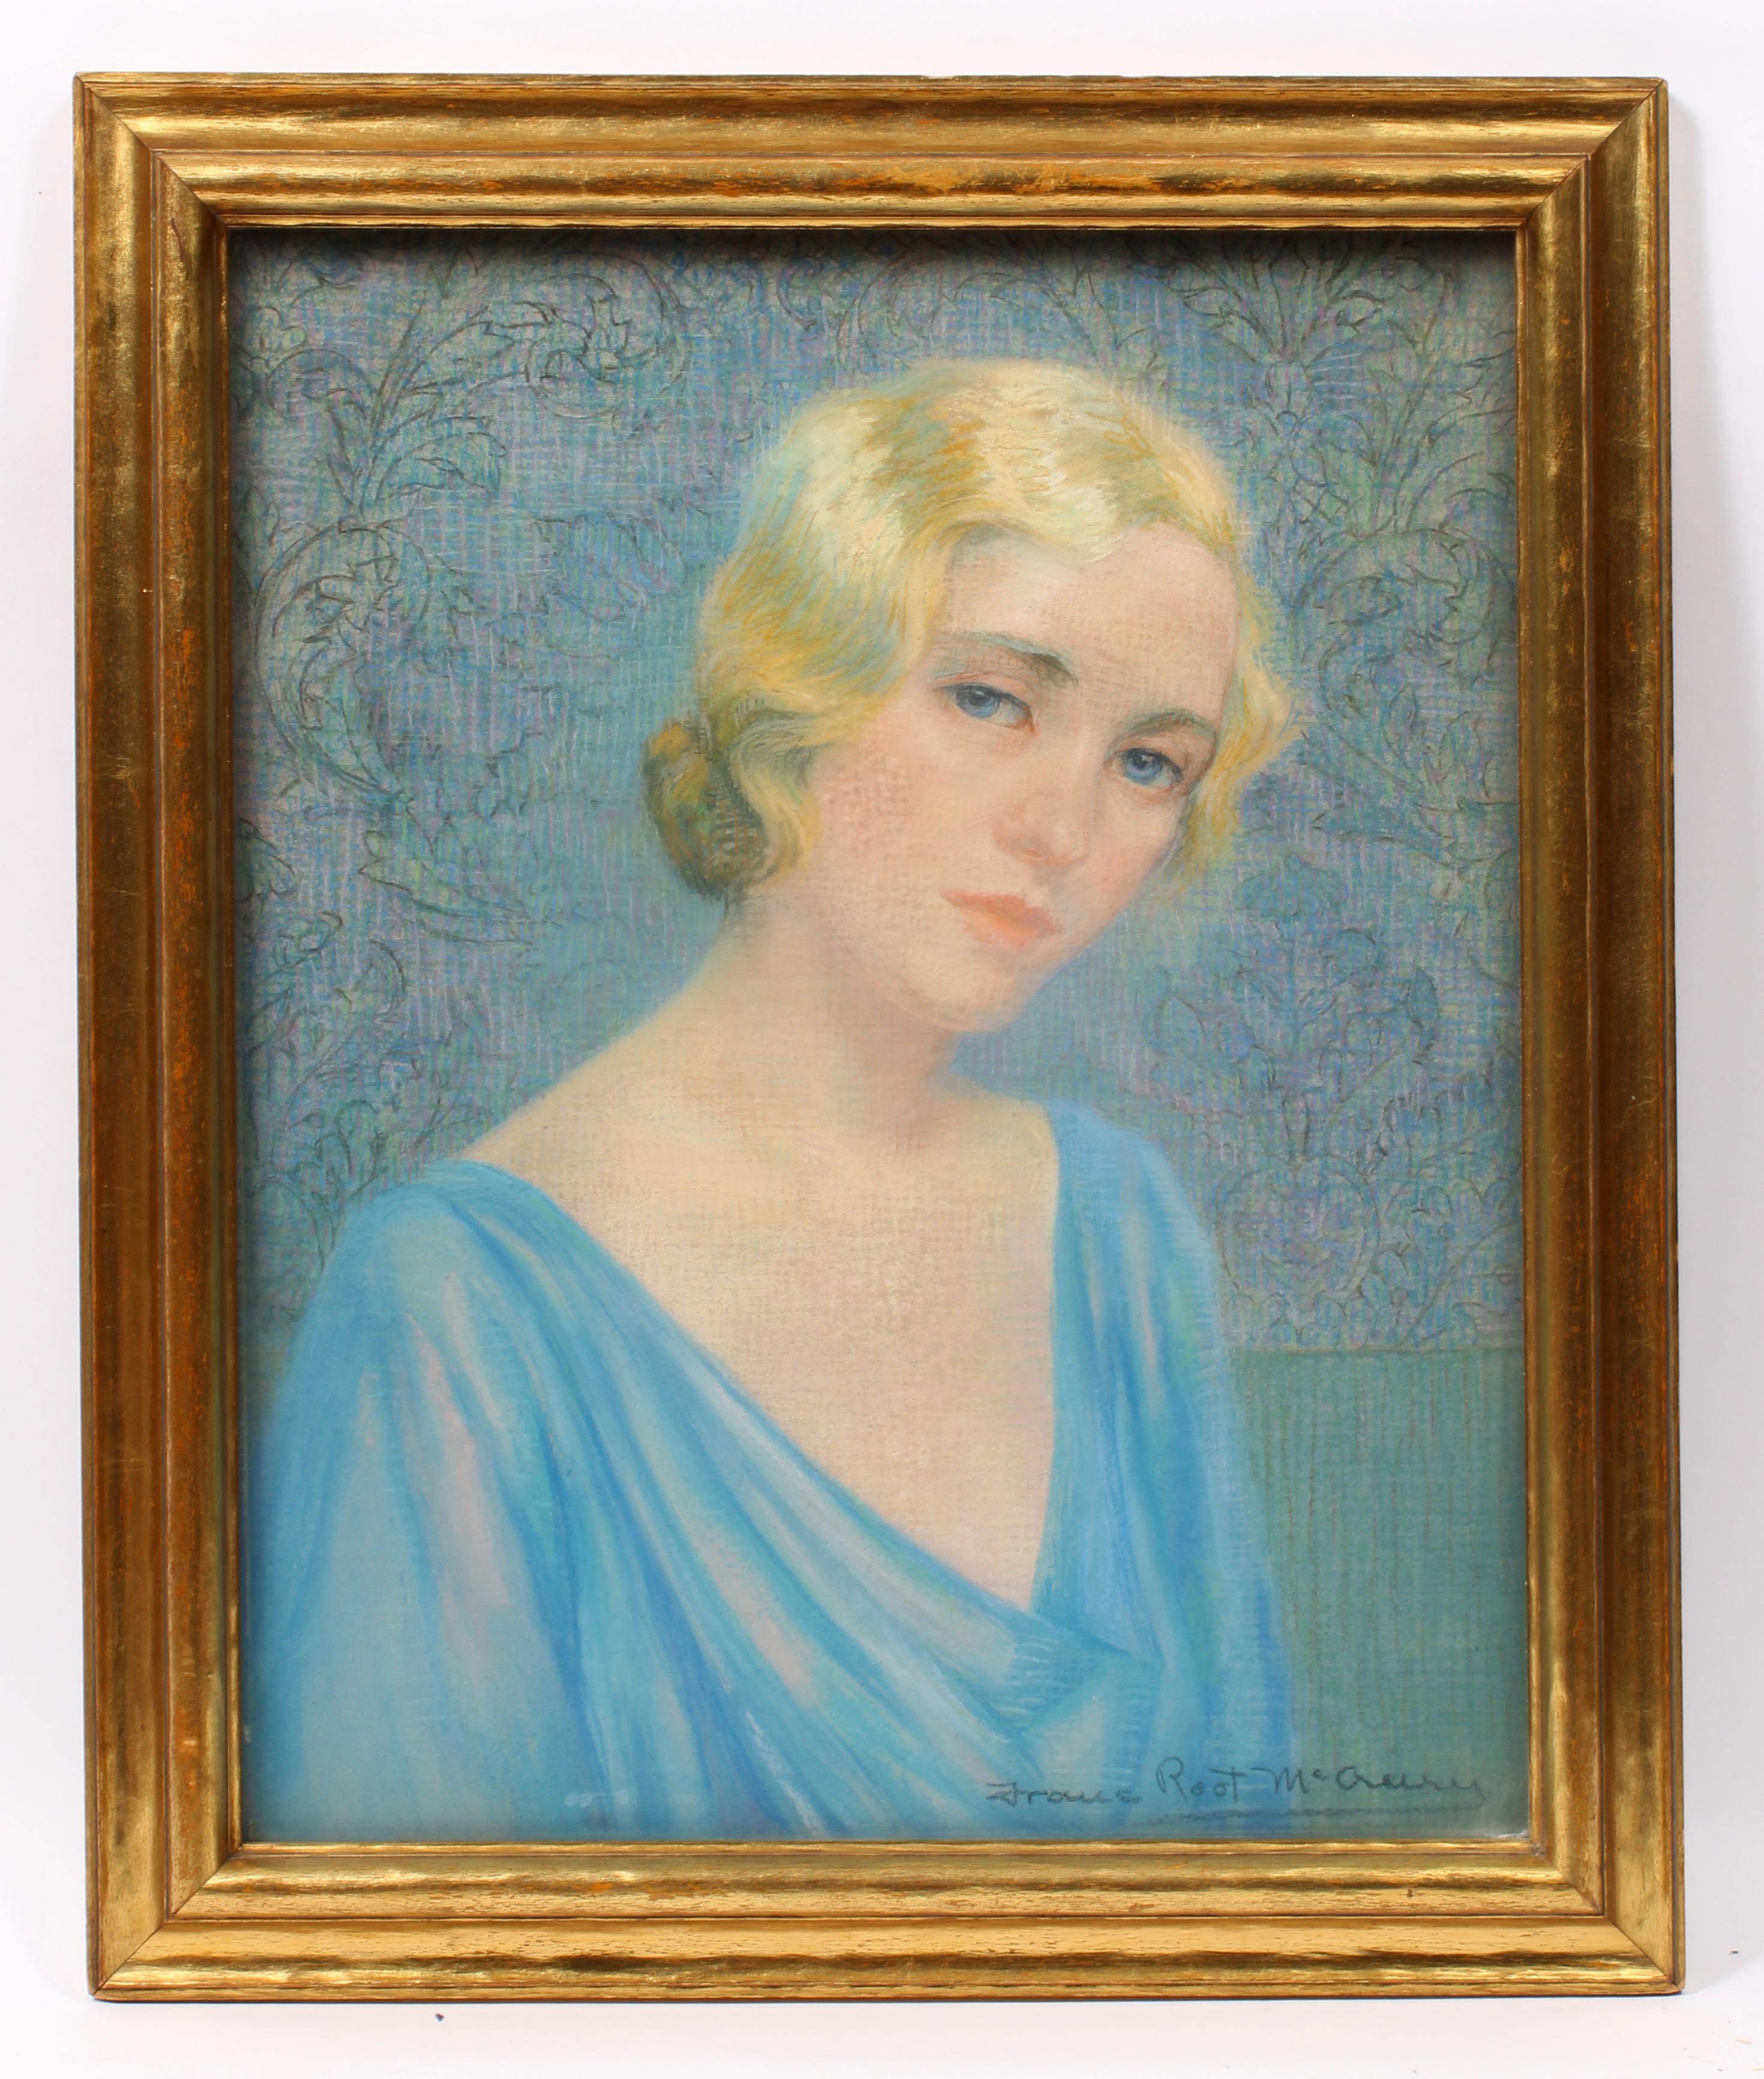 Franc Root McCreery Portrait – Art-déco-Porträt eines jungen Blondines